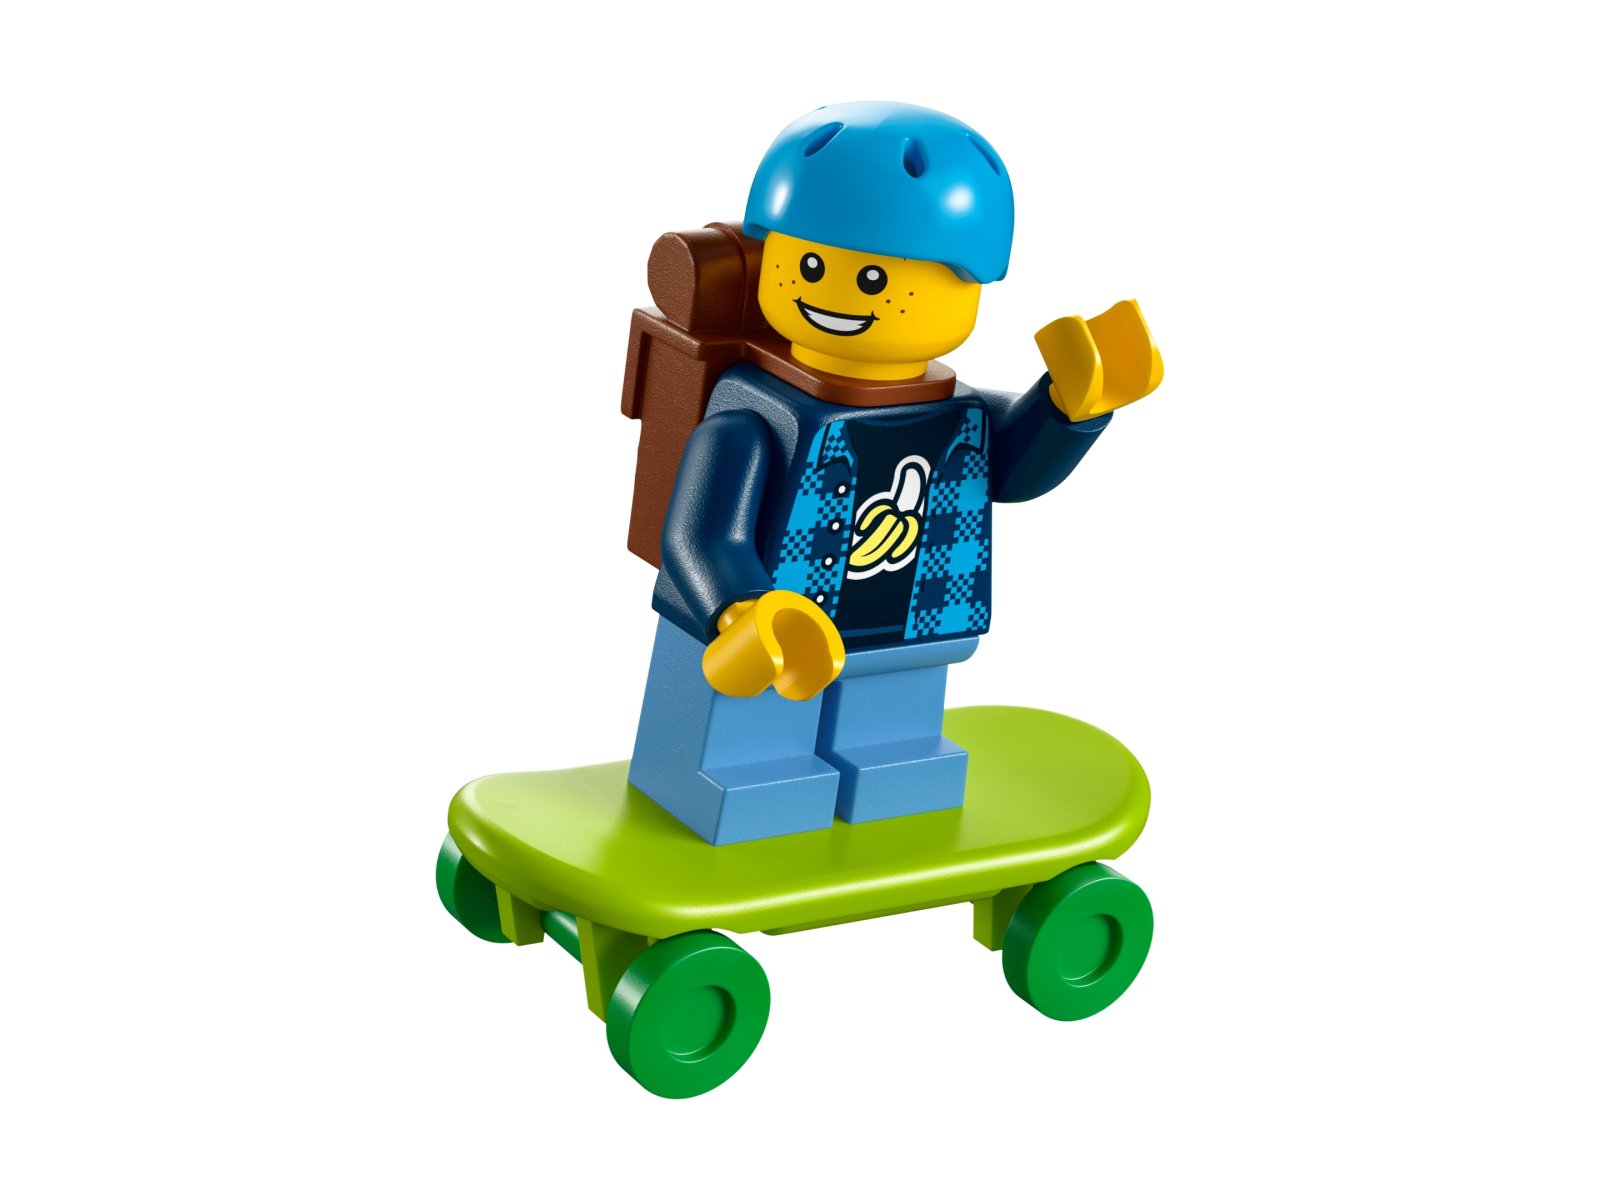 LEGO City Plac zabaw 30588